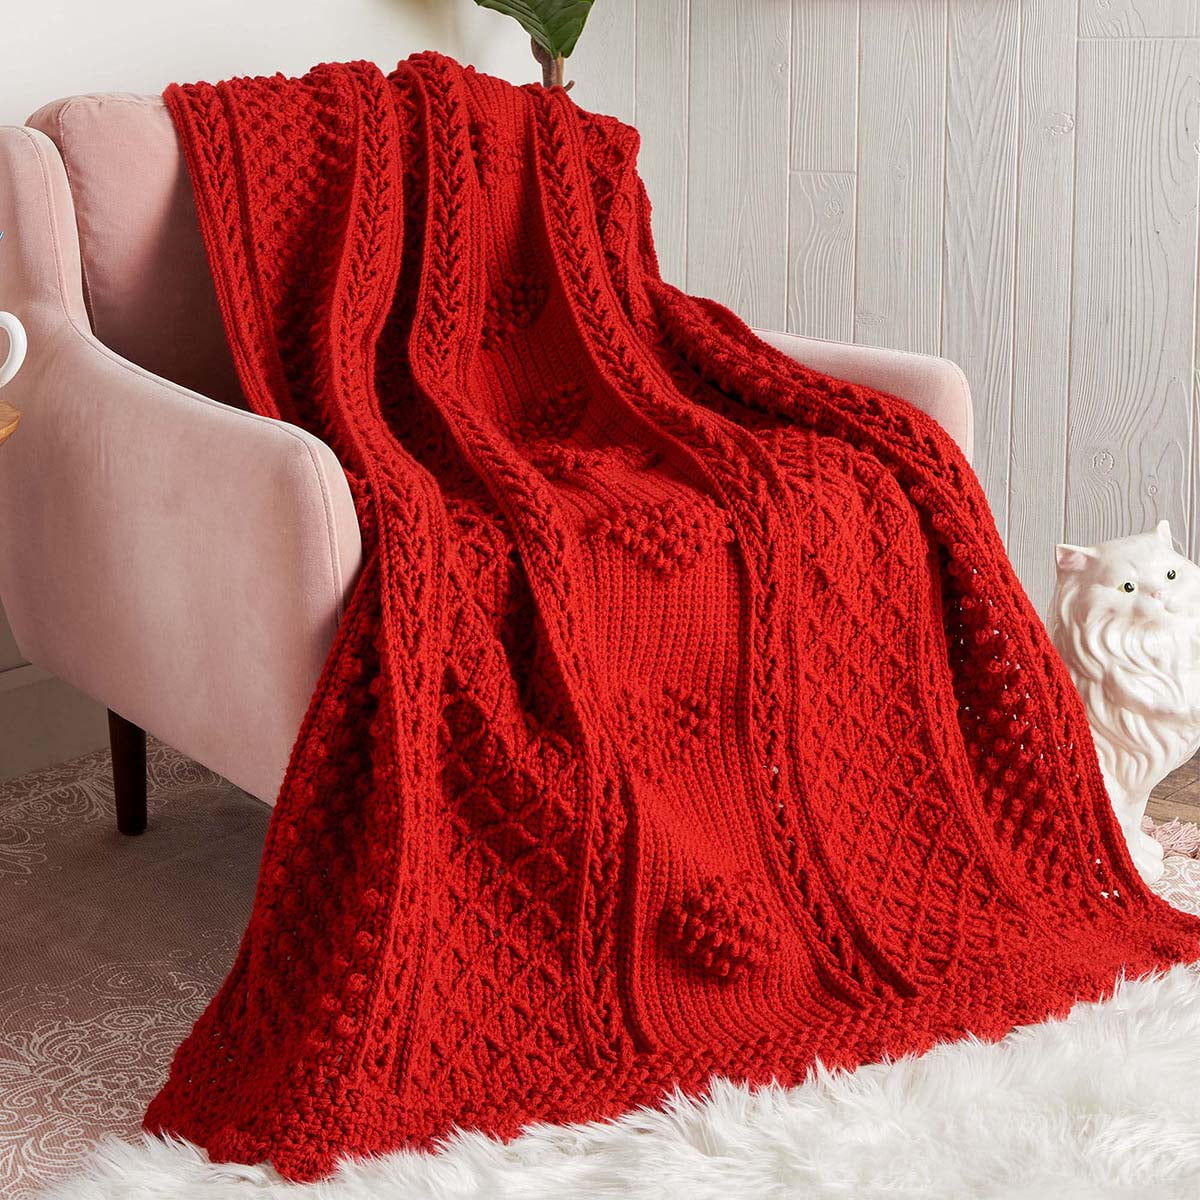 Red Heart Pompom Party Blanket Crochet Kit